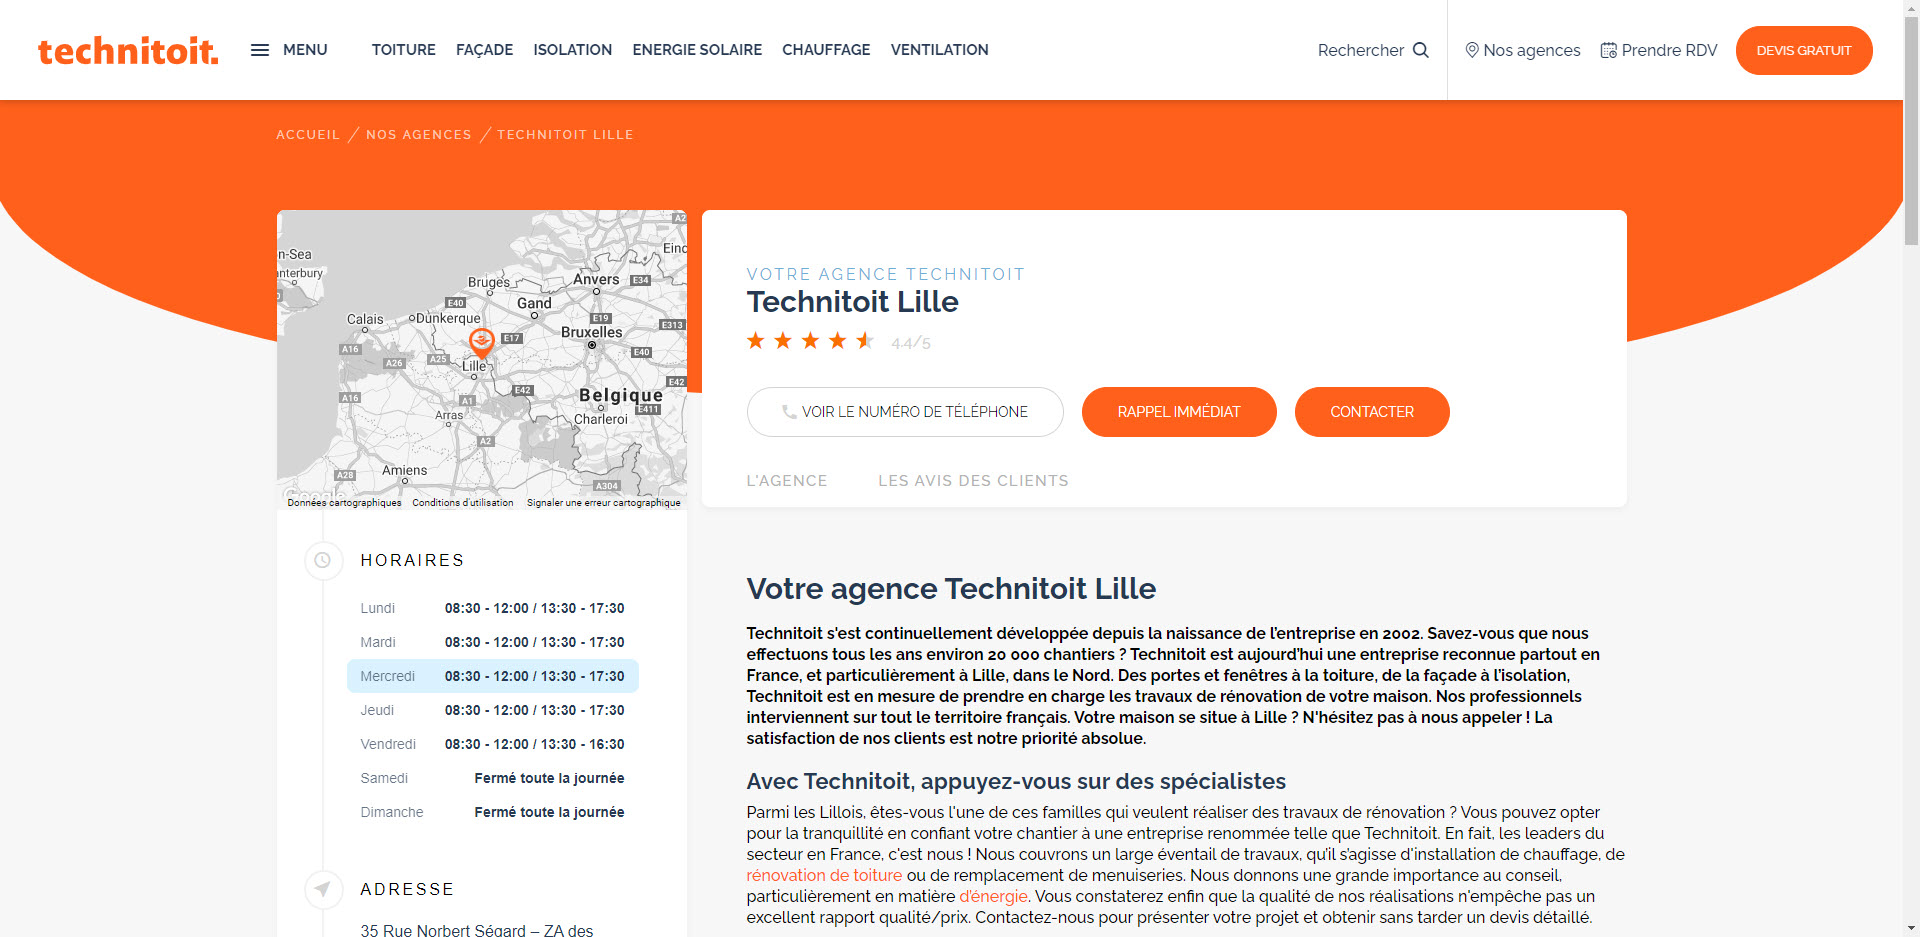 Technitoit Lille, le leader des travaux de rénovation dans le Nord